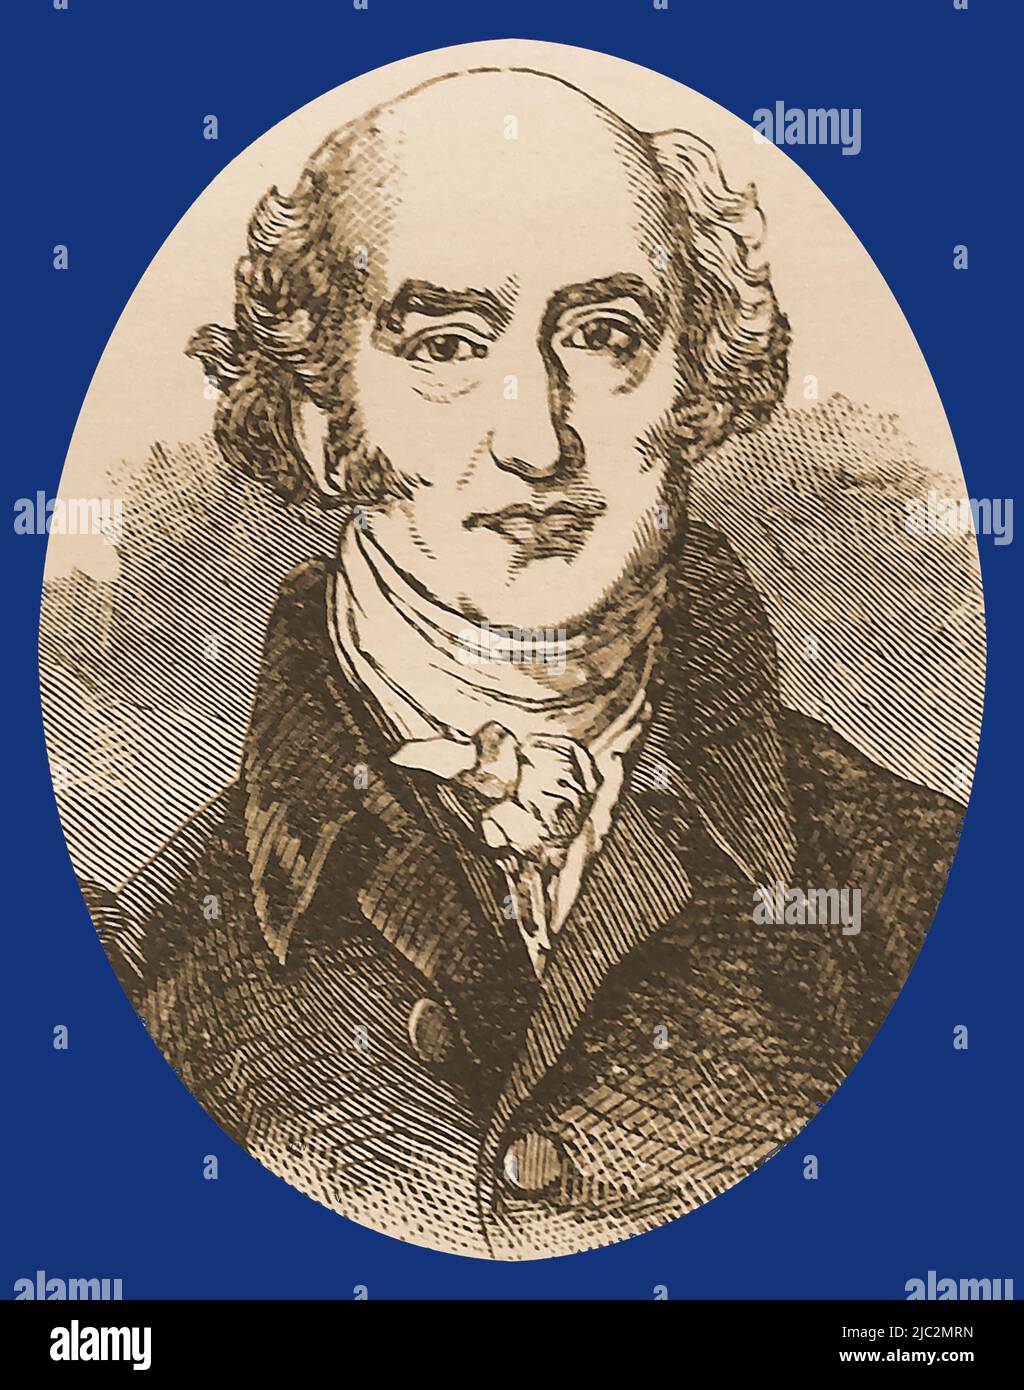 Un retrato de finales del siglo 19th de George Canning (1770 – 1827) , primer ministro conservador británico, estadista y orador. Ocupó muchos cargos parlamentarios, entre ellos el de Secretario de Estado de Asuntos Exteriores, Jefe de la Cámara de los Comunes, Presidente de la Junta de Control Foto de stock